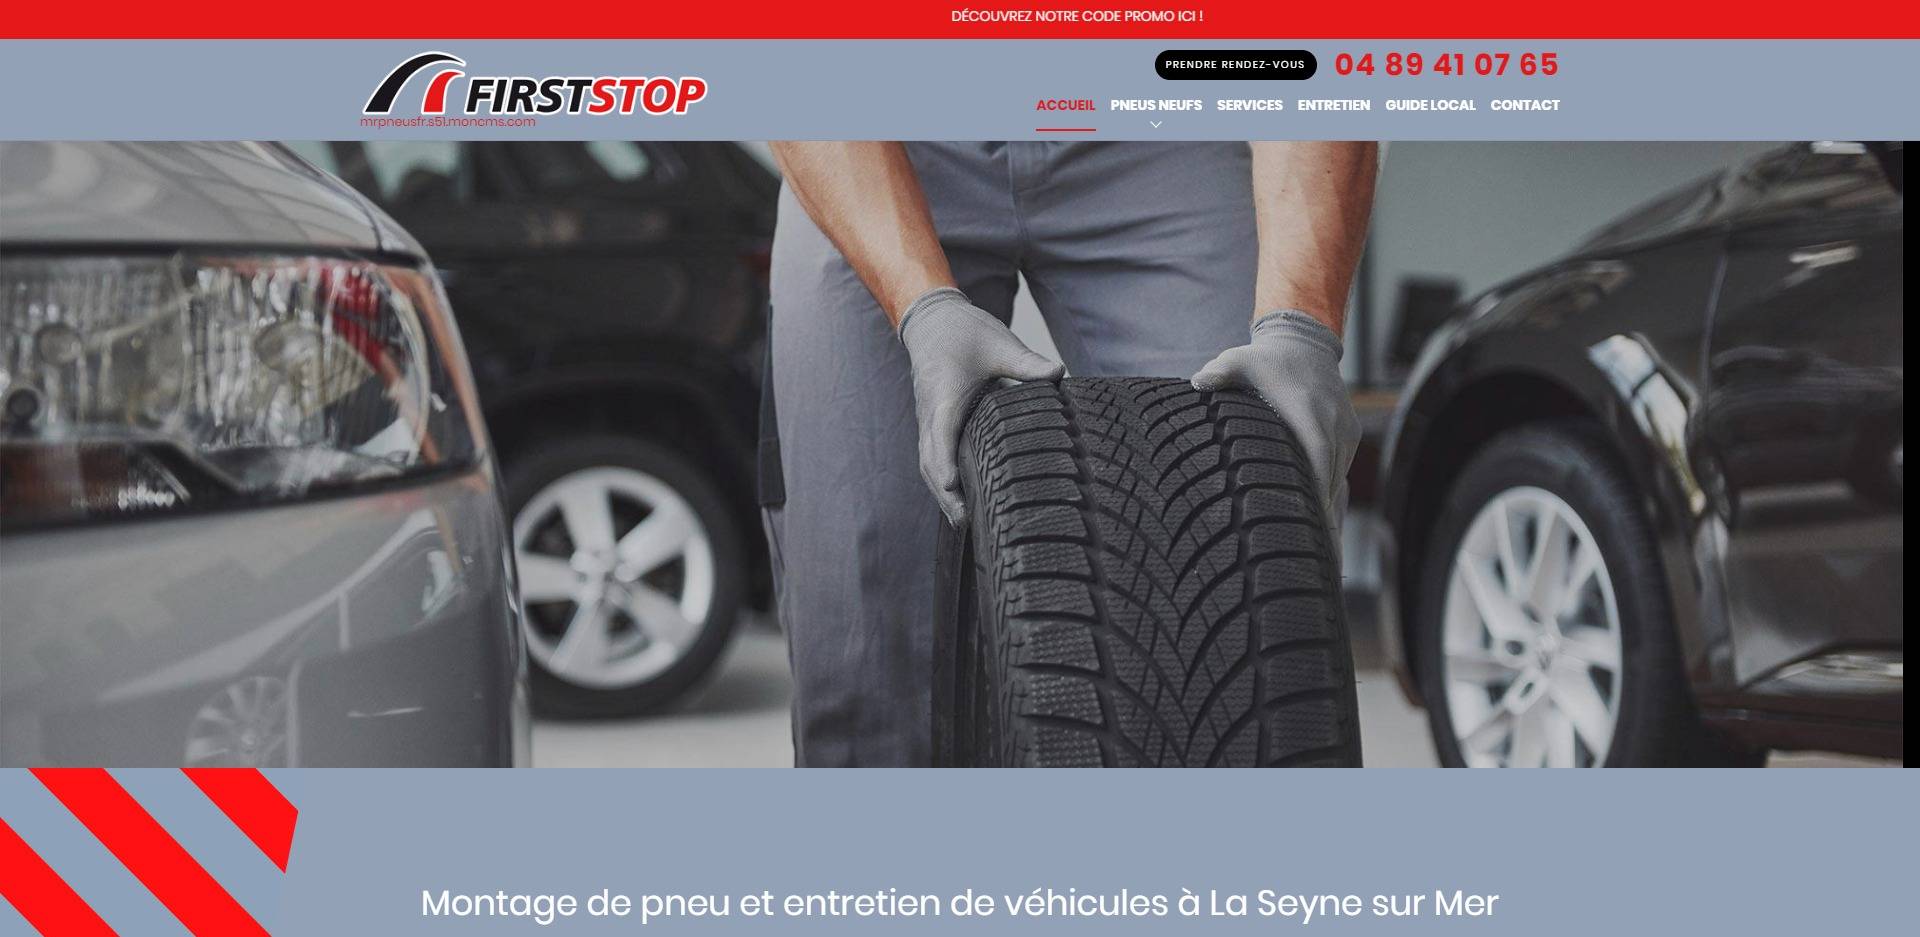 Garage First Stop Mr Pneus, spécialiste de l'Entretien, la révision auto et le montage de pneu pas cher à La Seyne-sur-Mer